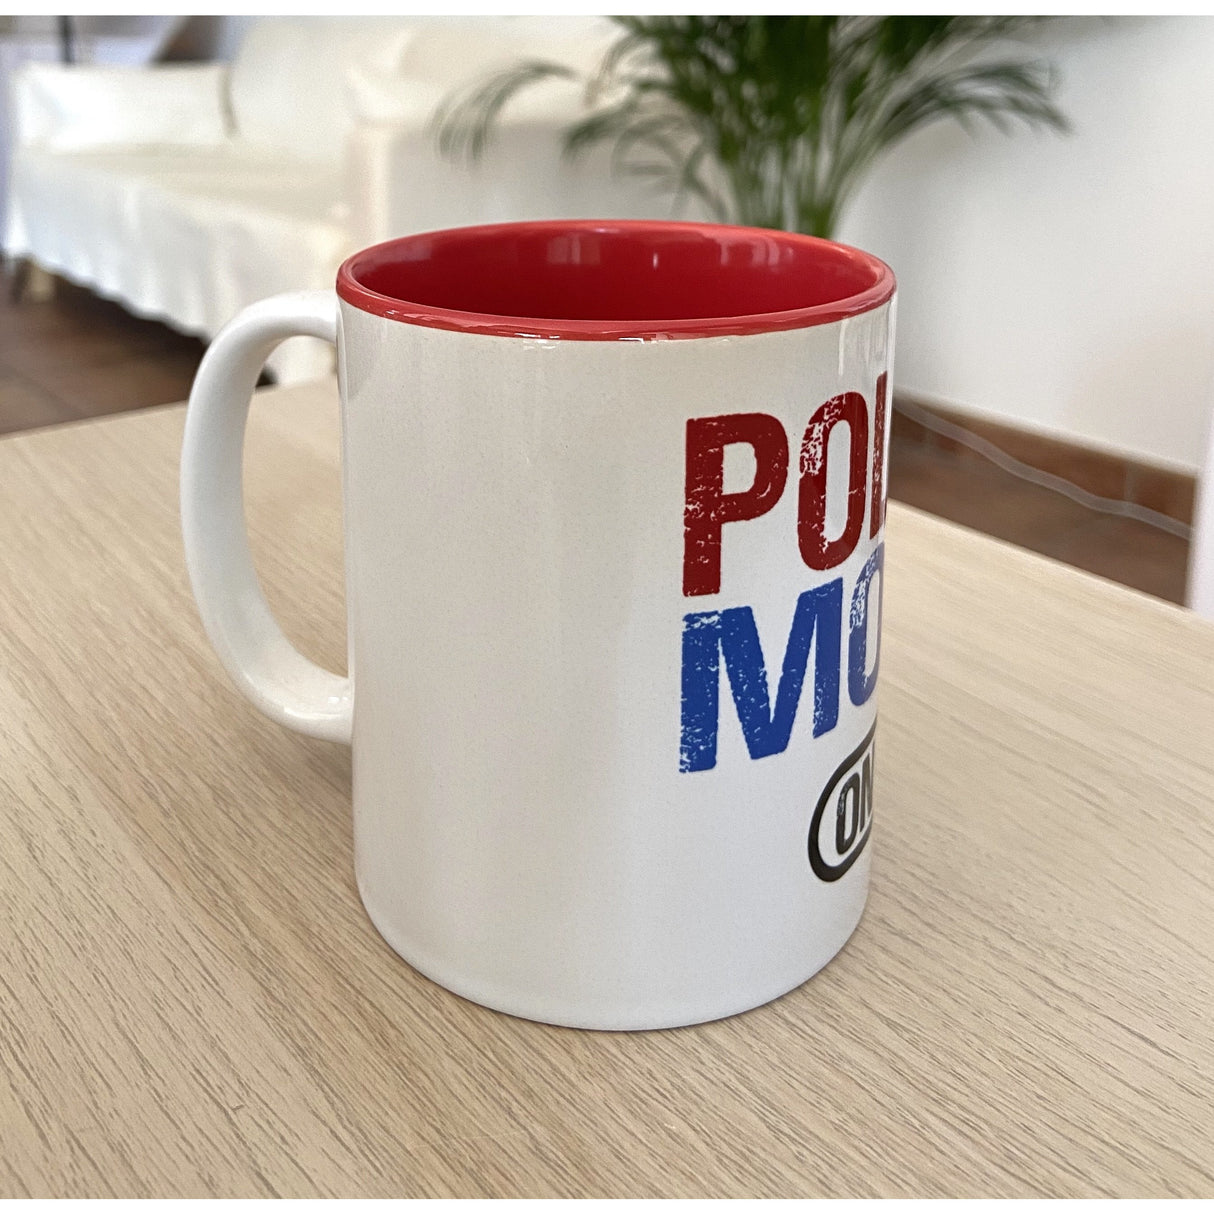 Police Mode On mug